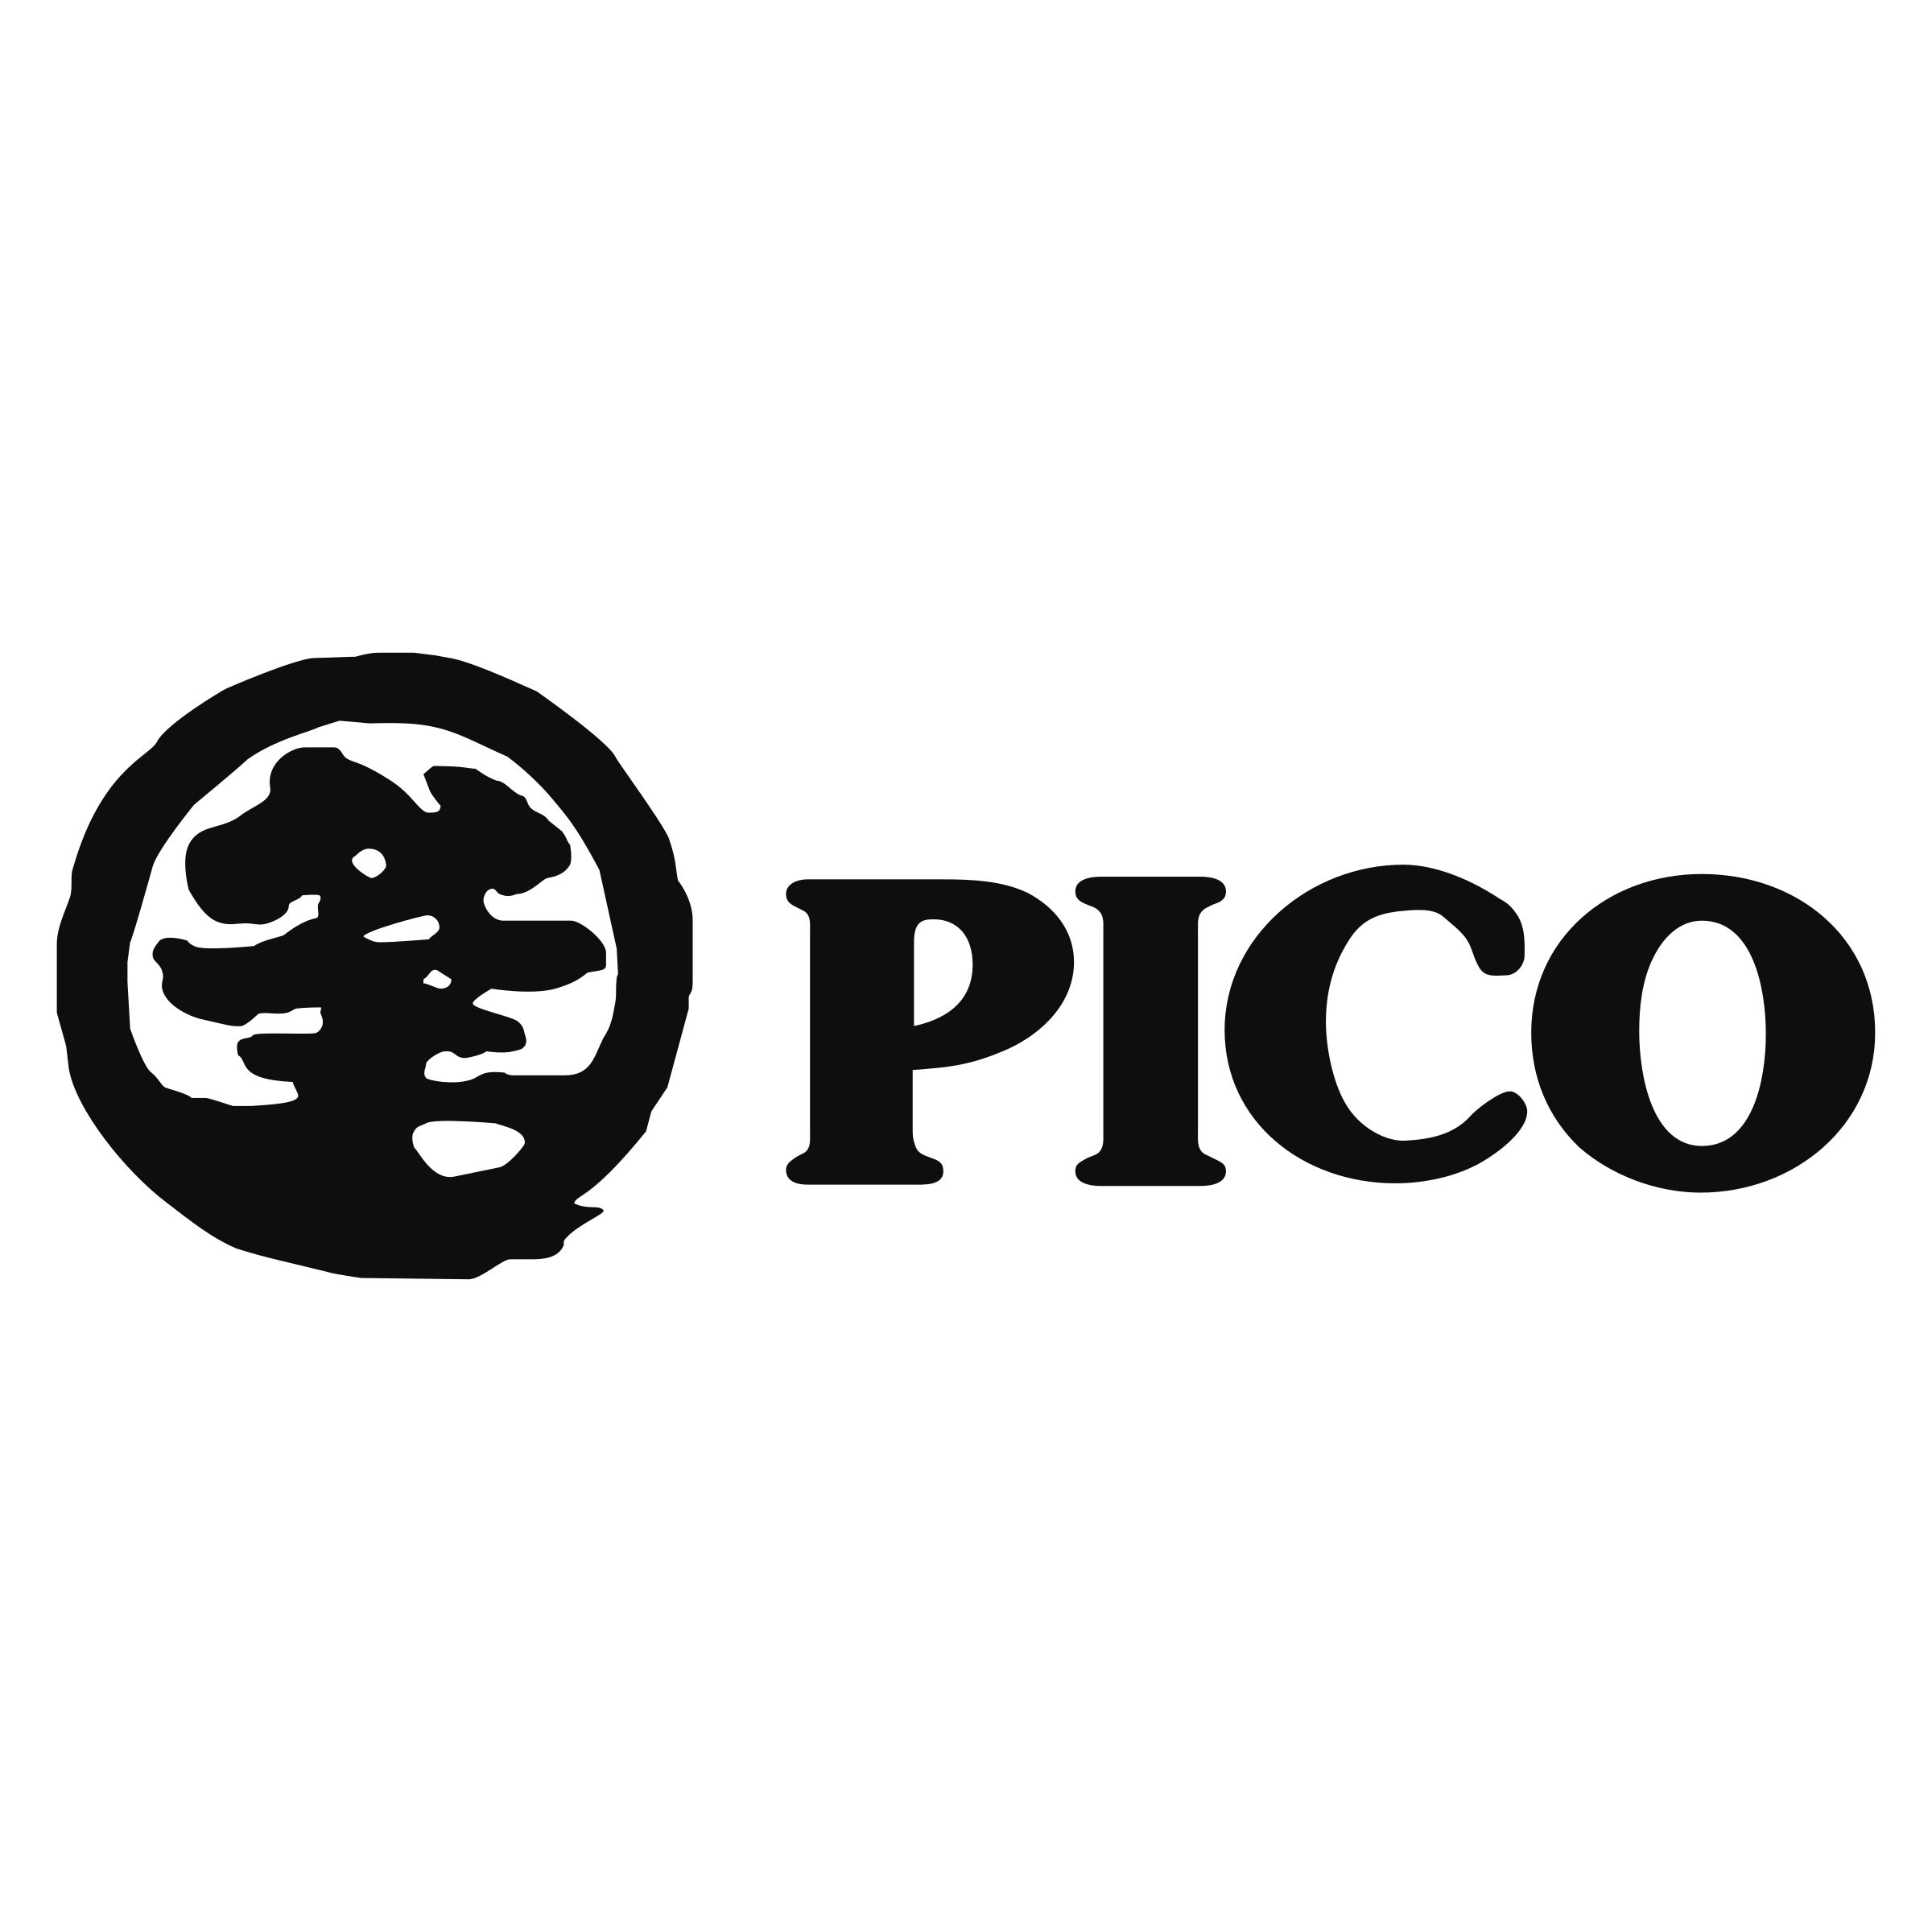 Pico Logo - Pico Logo PNG Transparent & SVG Vector - Freebie Supply